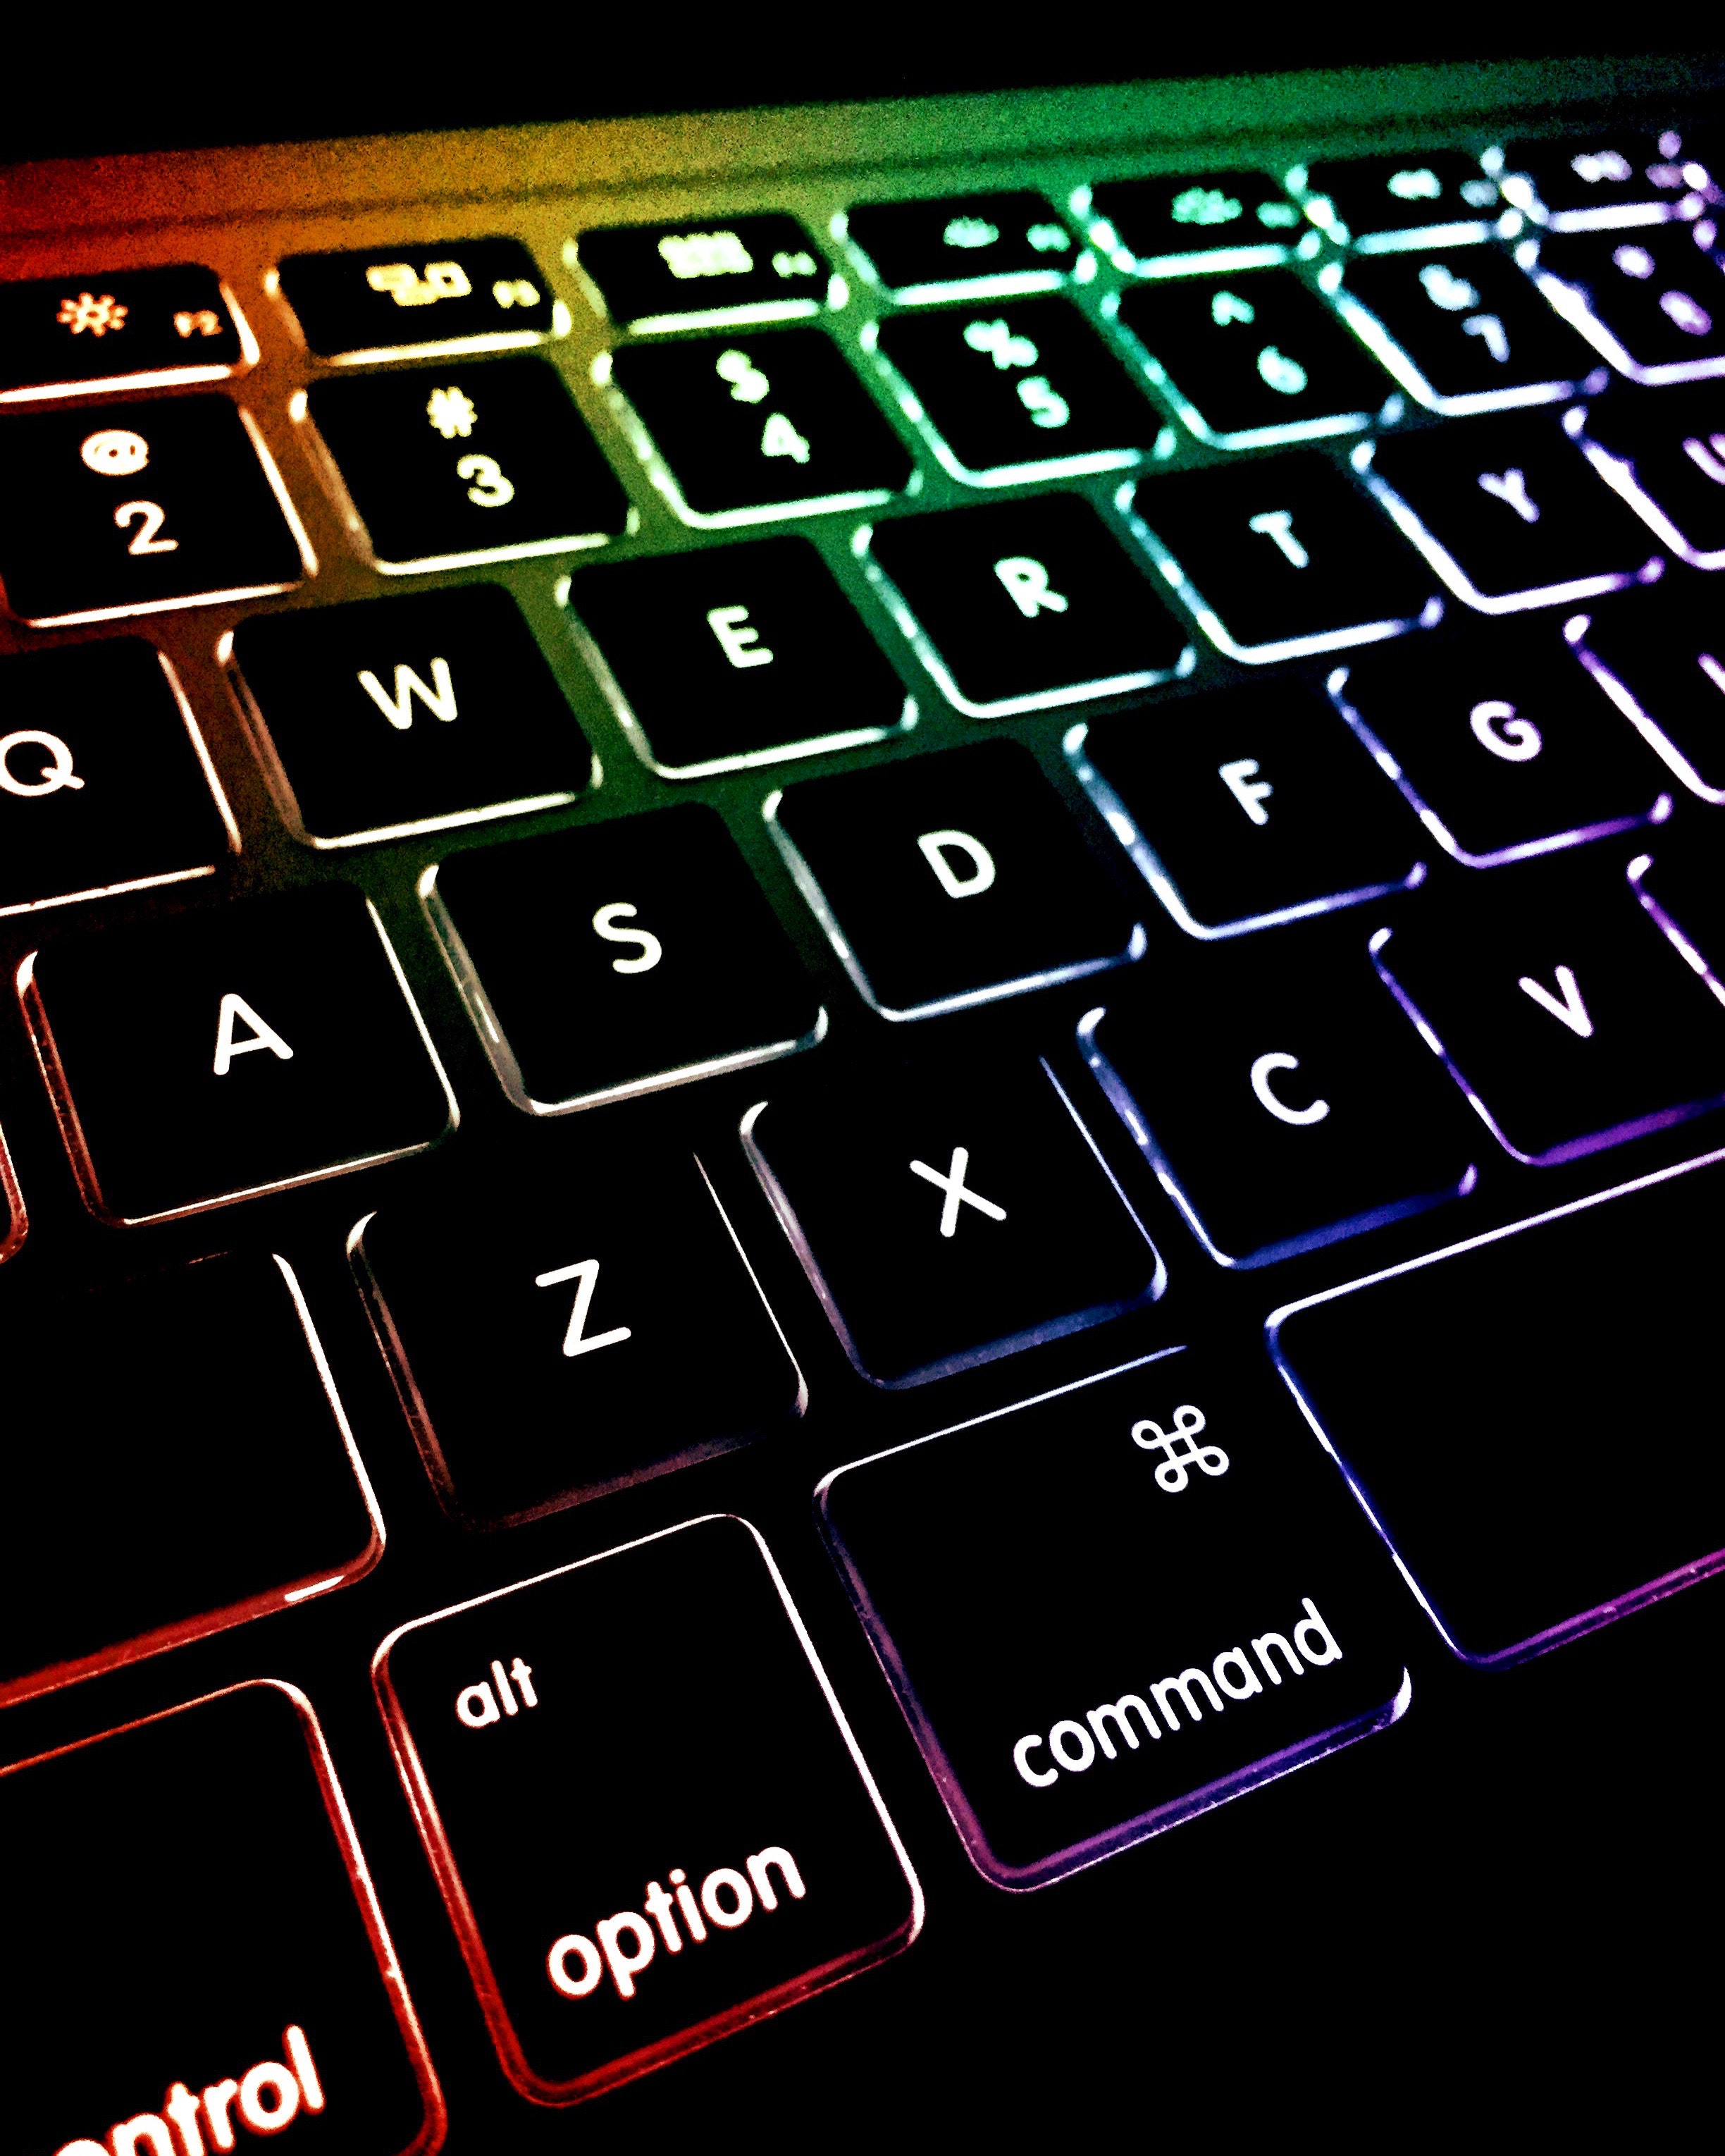 Macbook colored keyboard photo